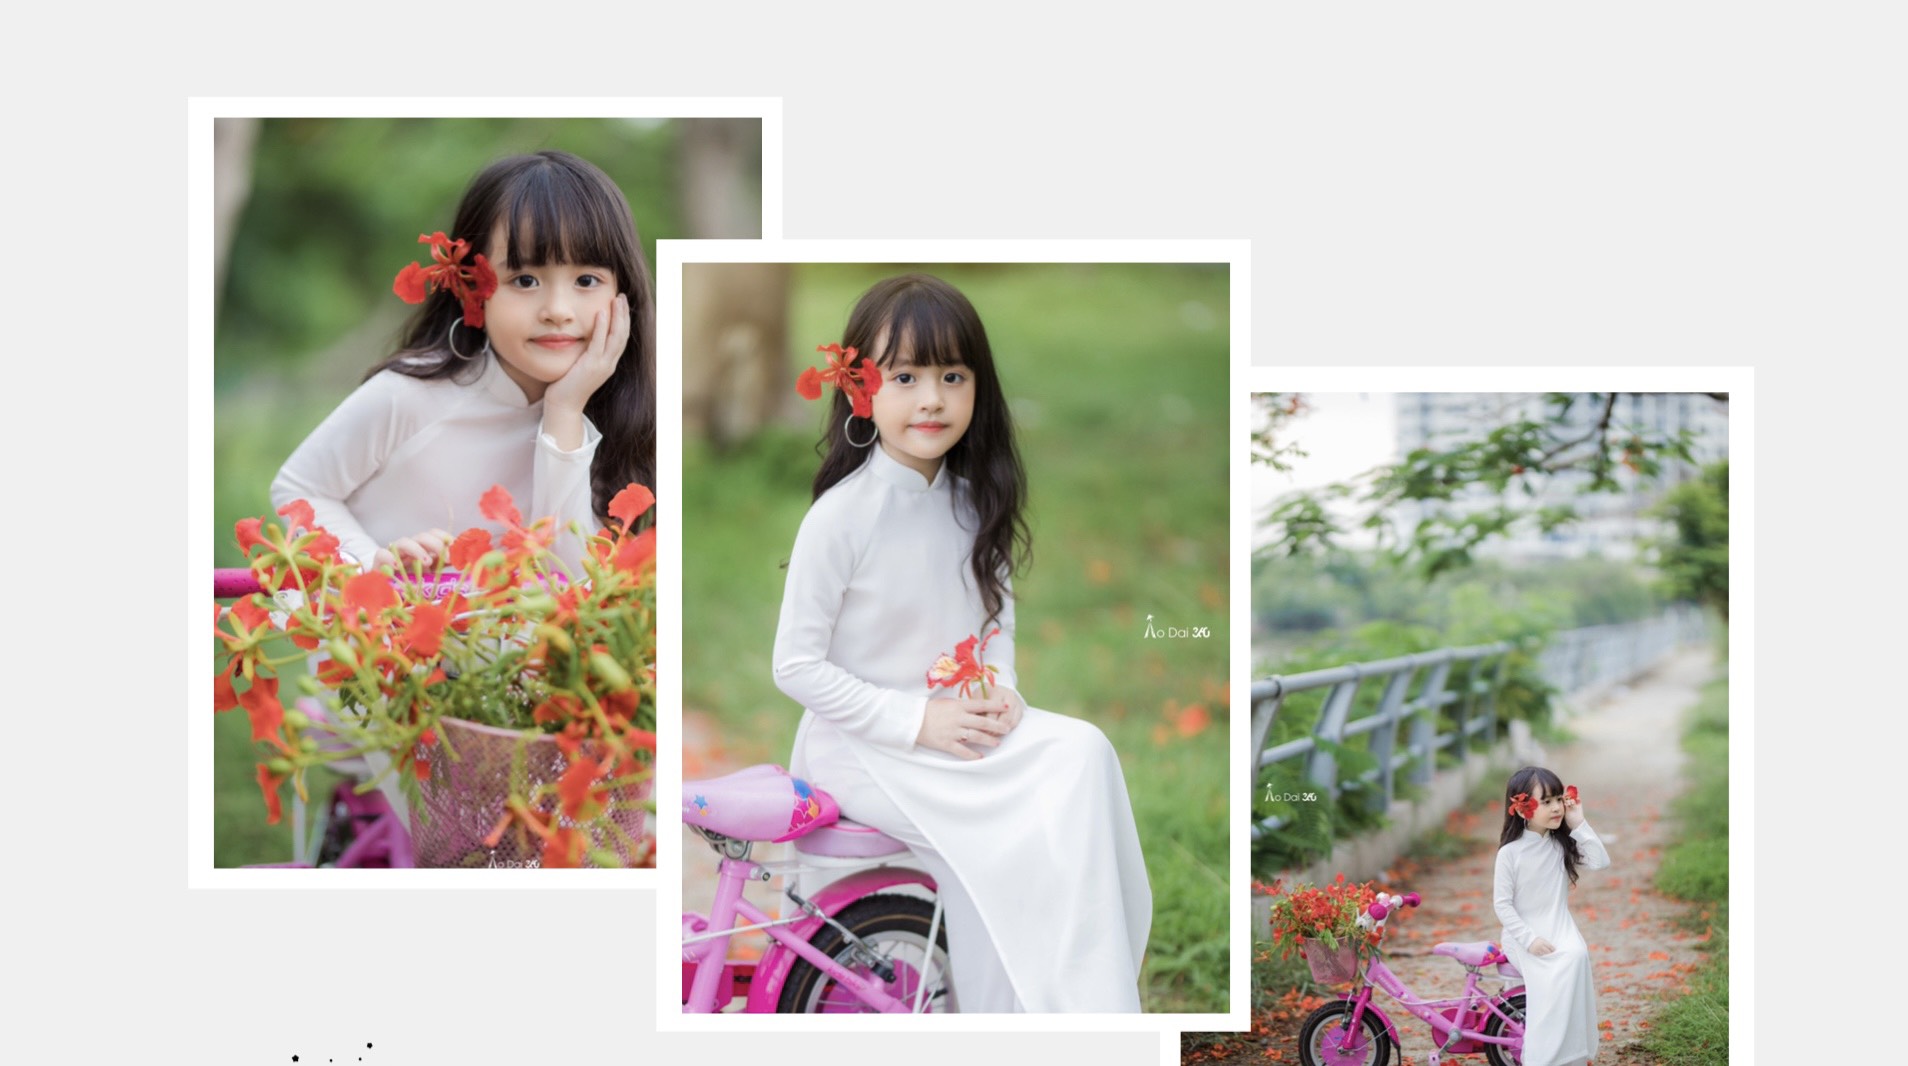 Áo dài hoa phượng là biểu tượng của sự sang trọng và quyến rũ trong văn hóa Việt Nam. Hãy cùng khám phá bức ảnh đẹp nhất với chiếc áo dài hoa phượng để cảm nhận sự kiêu sa và trang nhã của văn hóa truyền thống Việt Nam.